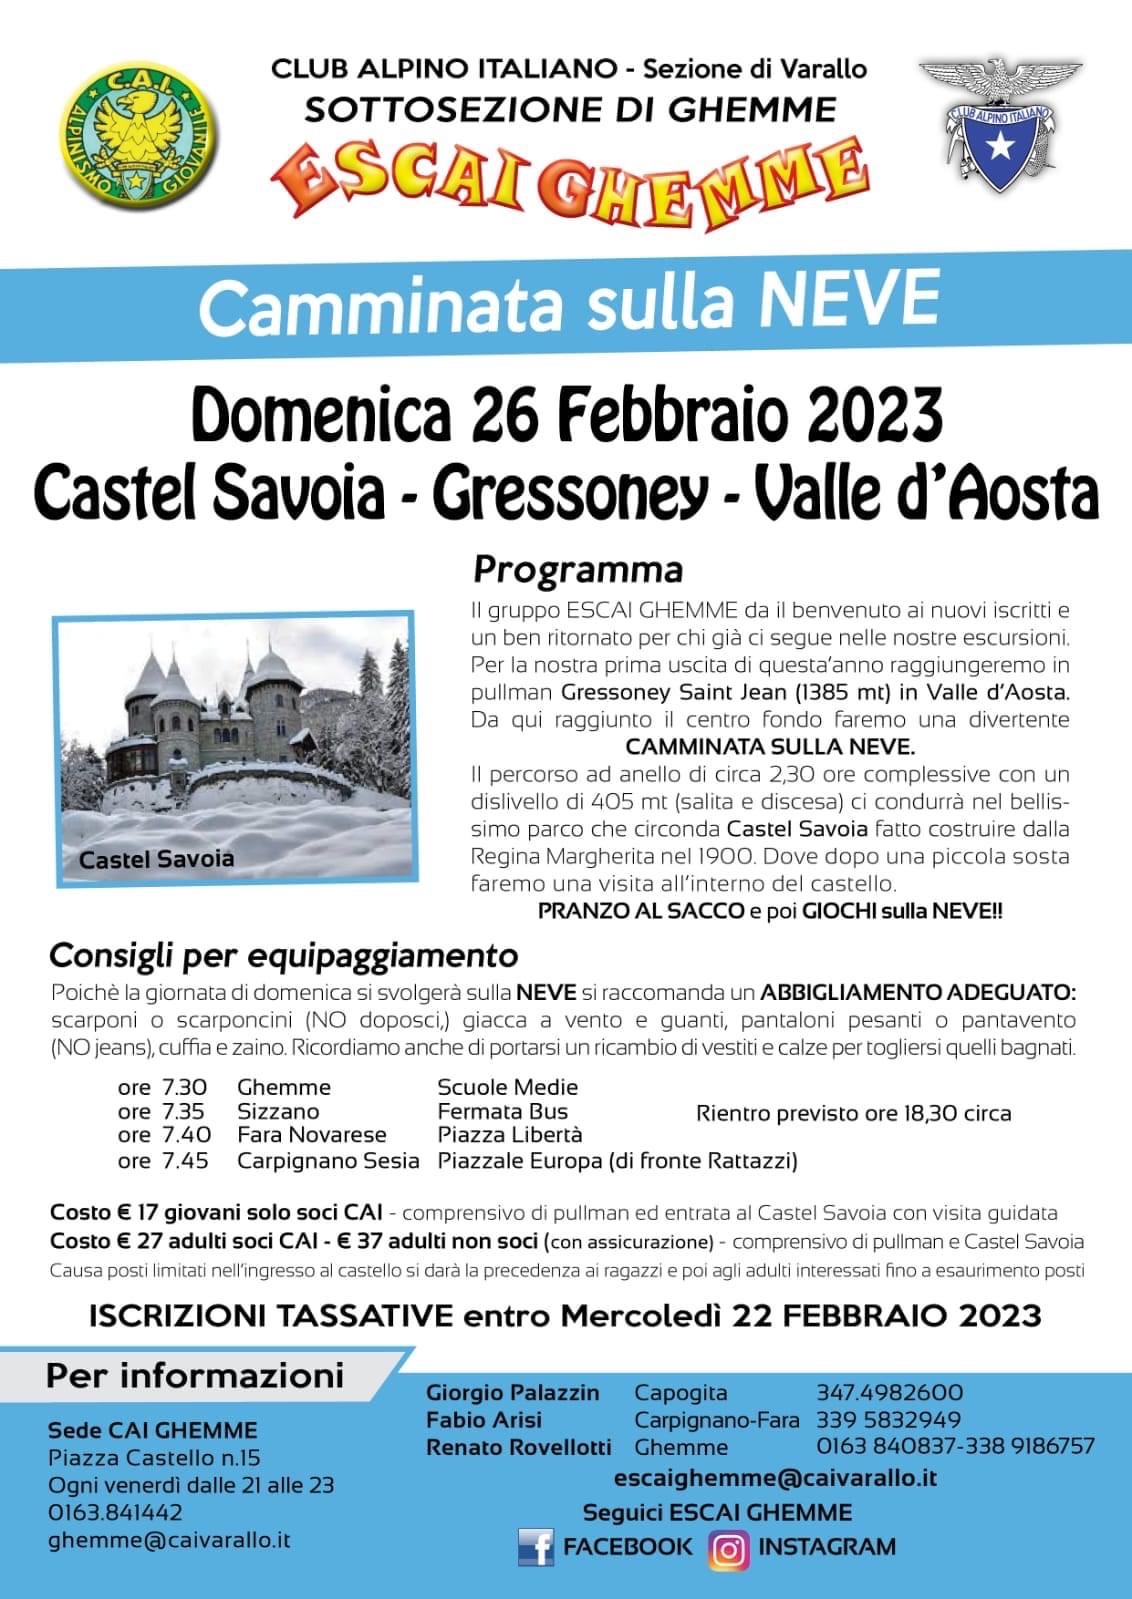 Camminata sulla neve - Castel Savoia - Gressoney